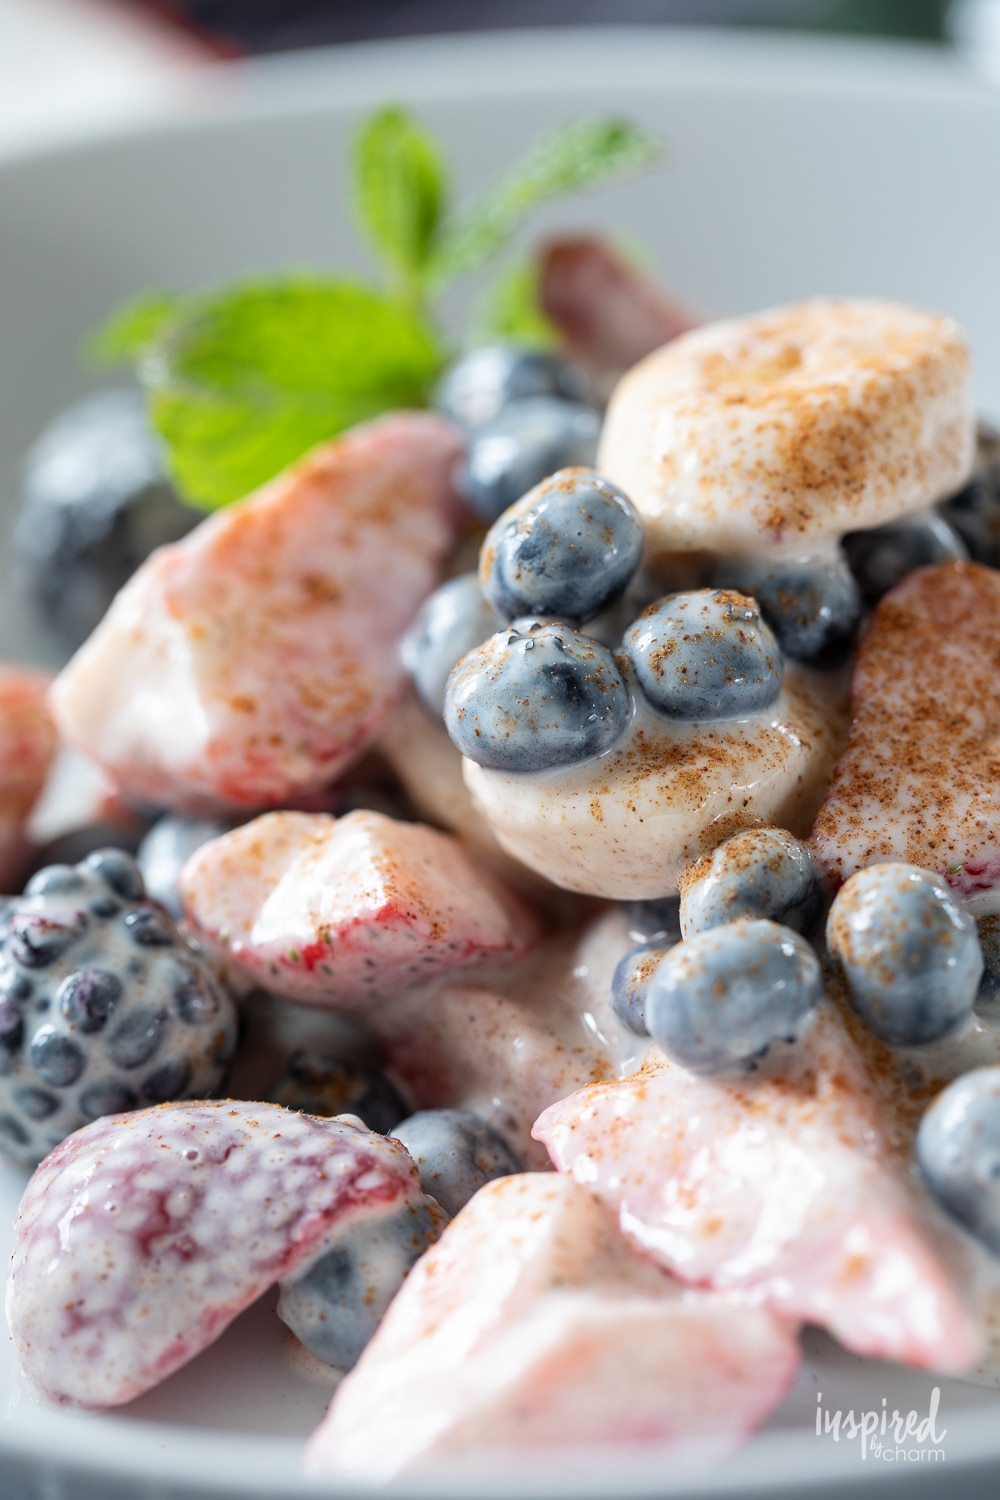 berries and banana fruits salad mixed with yogurt.